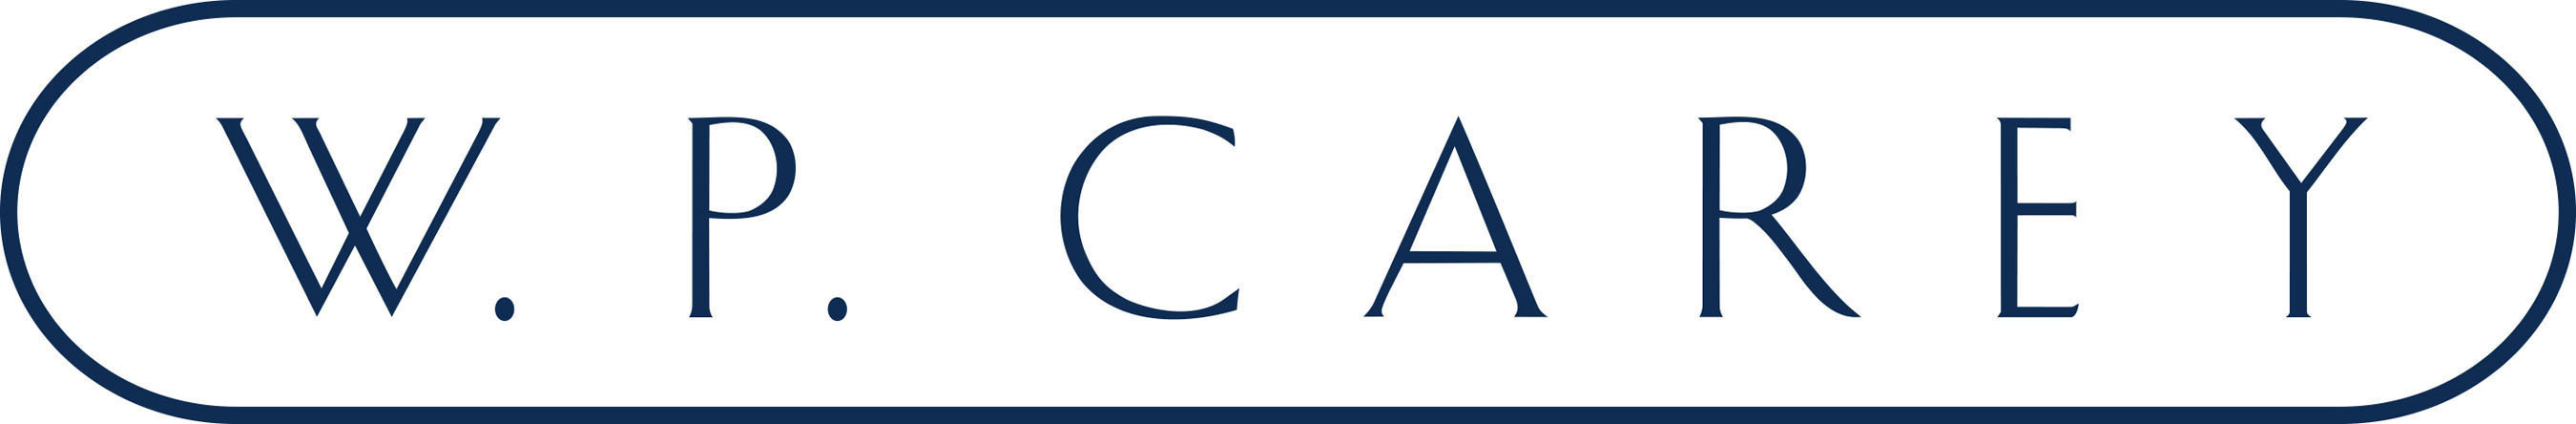 W. P. Carey Inc. Logo.